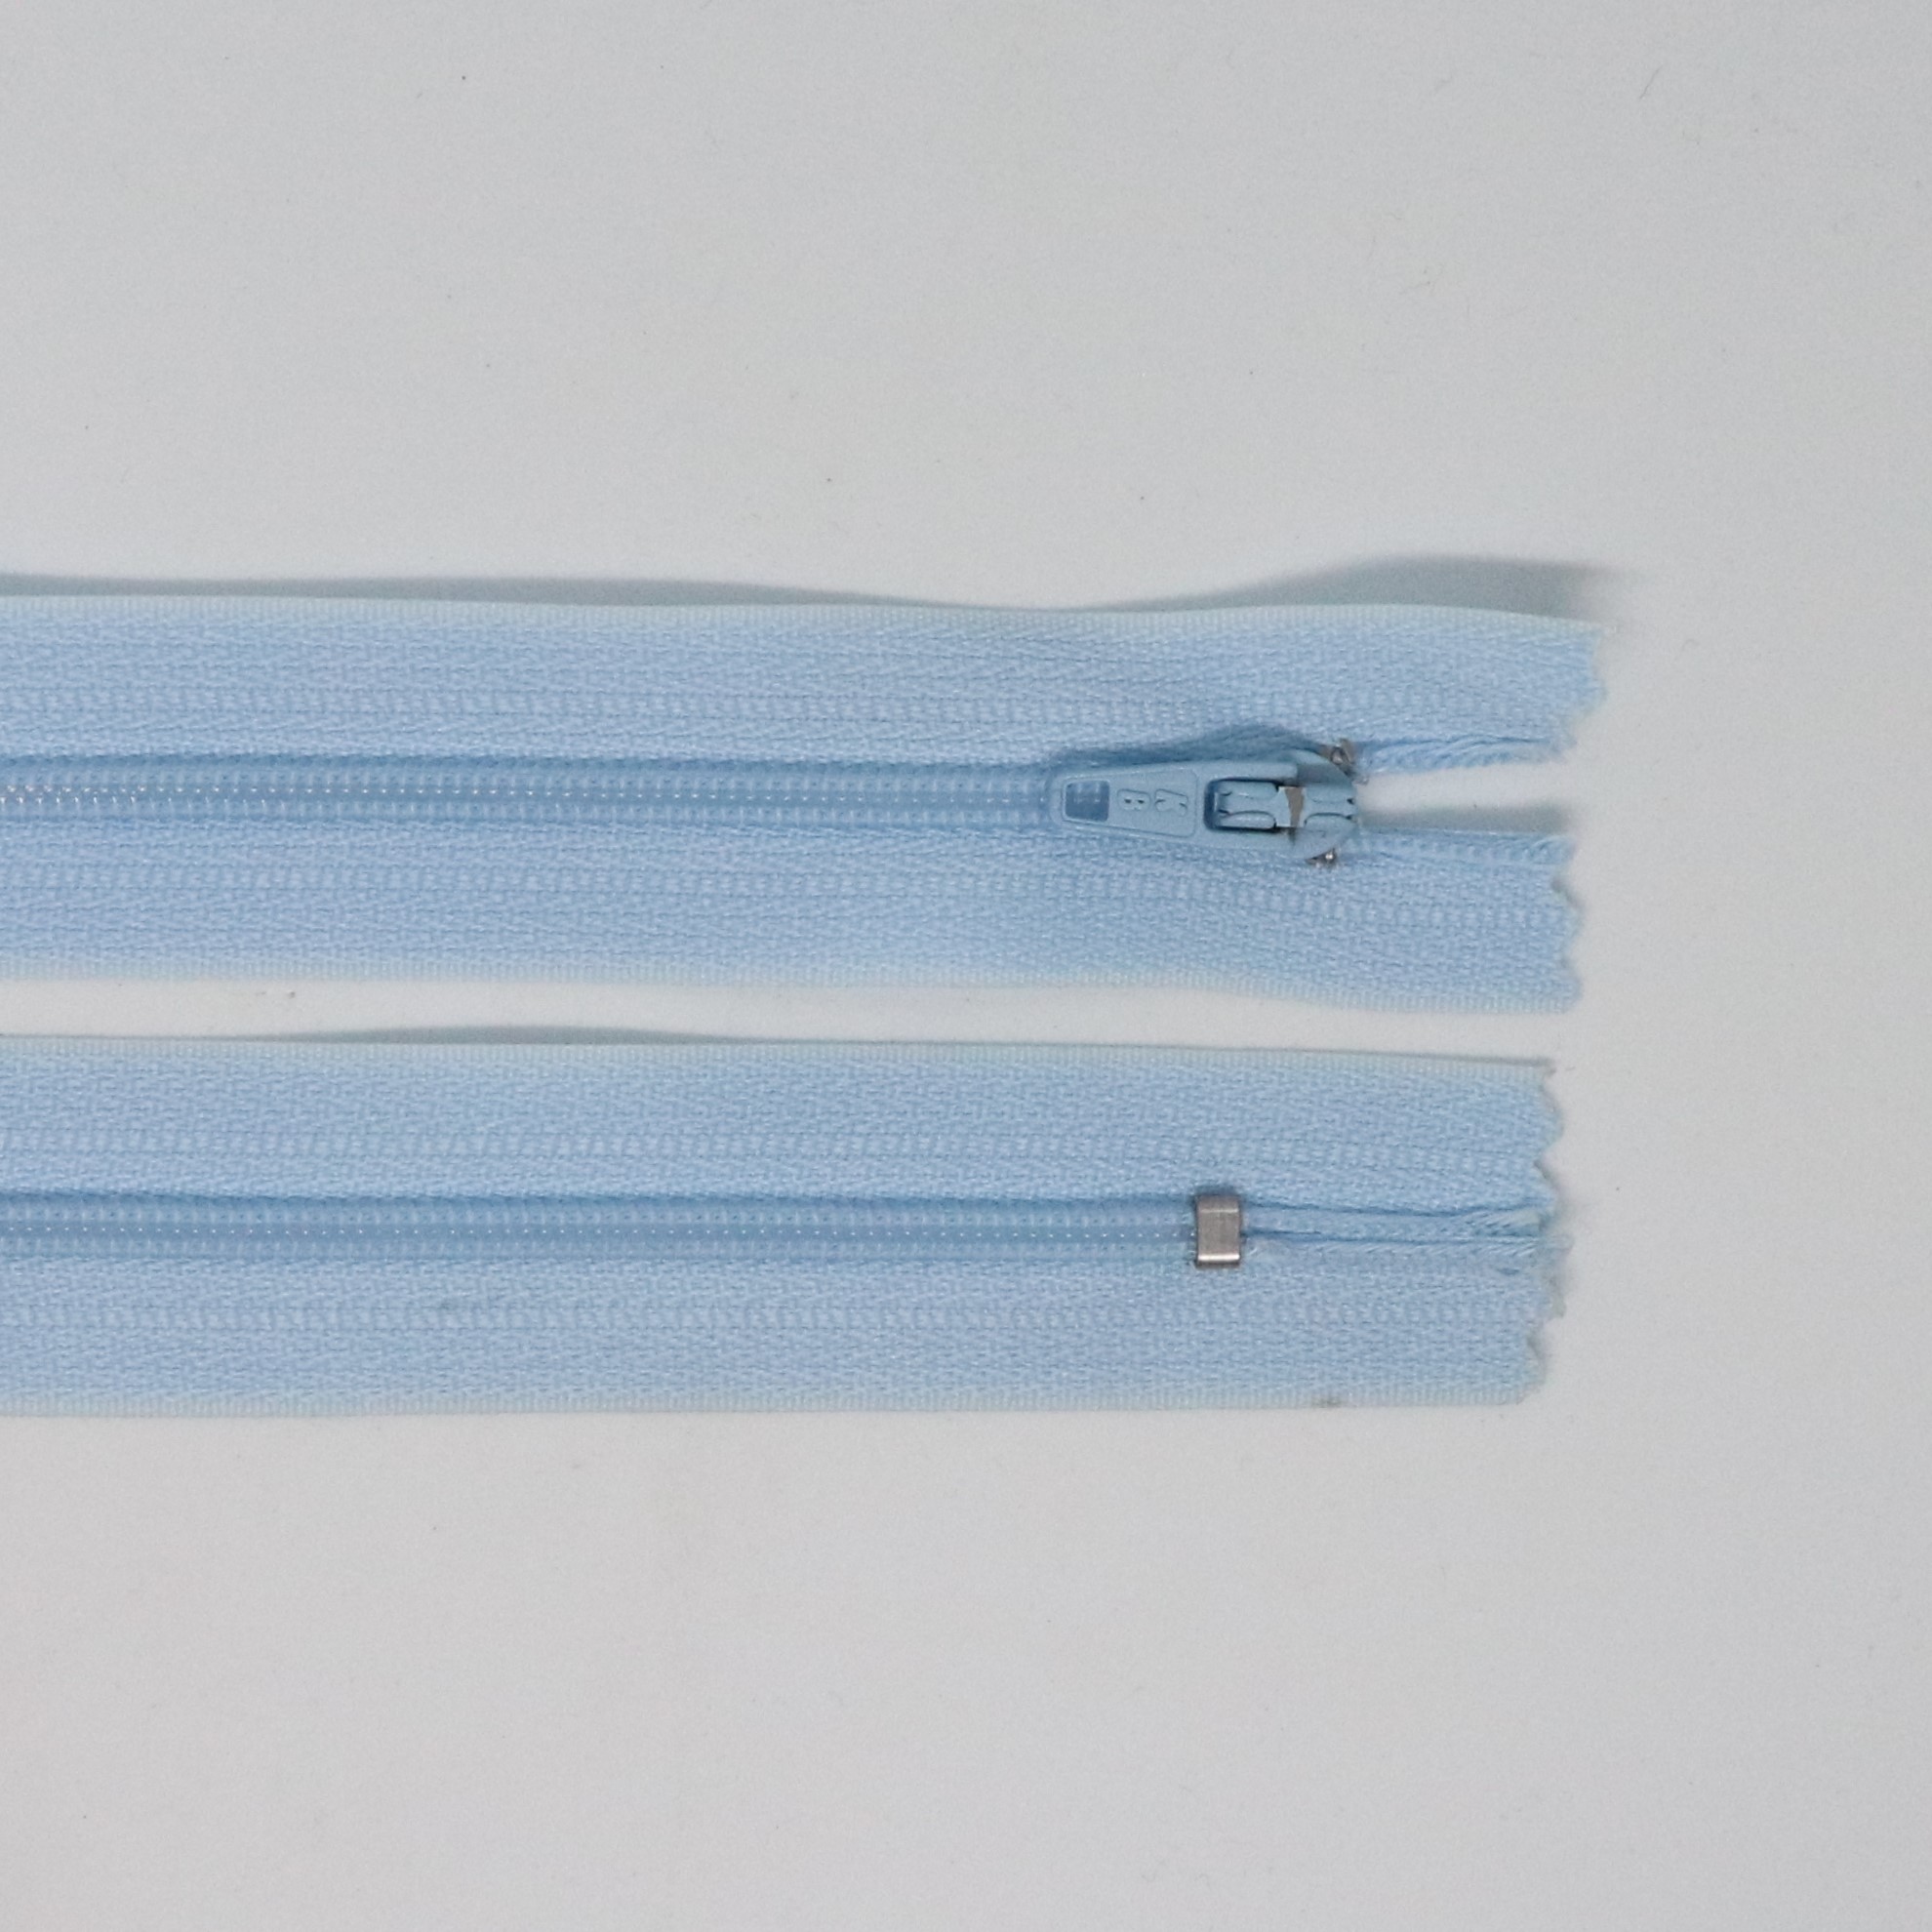 Spirálový zip, šíøe 3 mm, délka 65 cm, svìtle modrá - zvìtšit obrázek